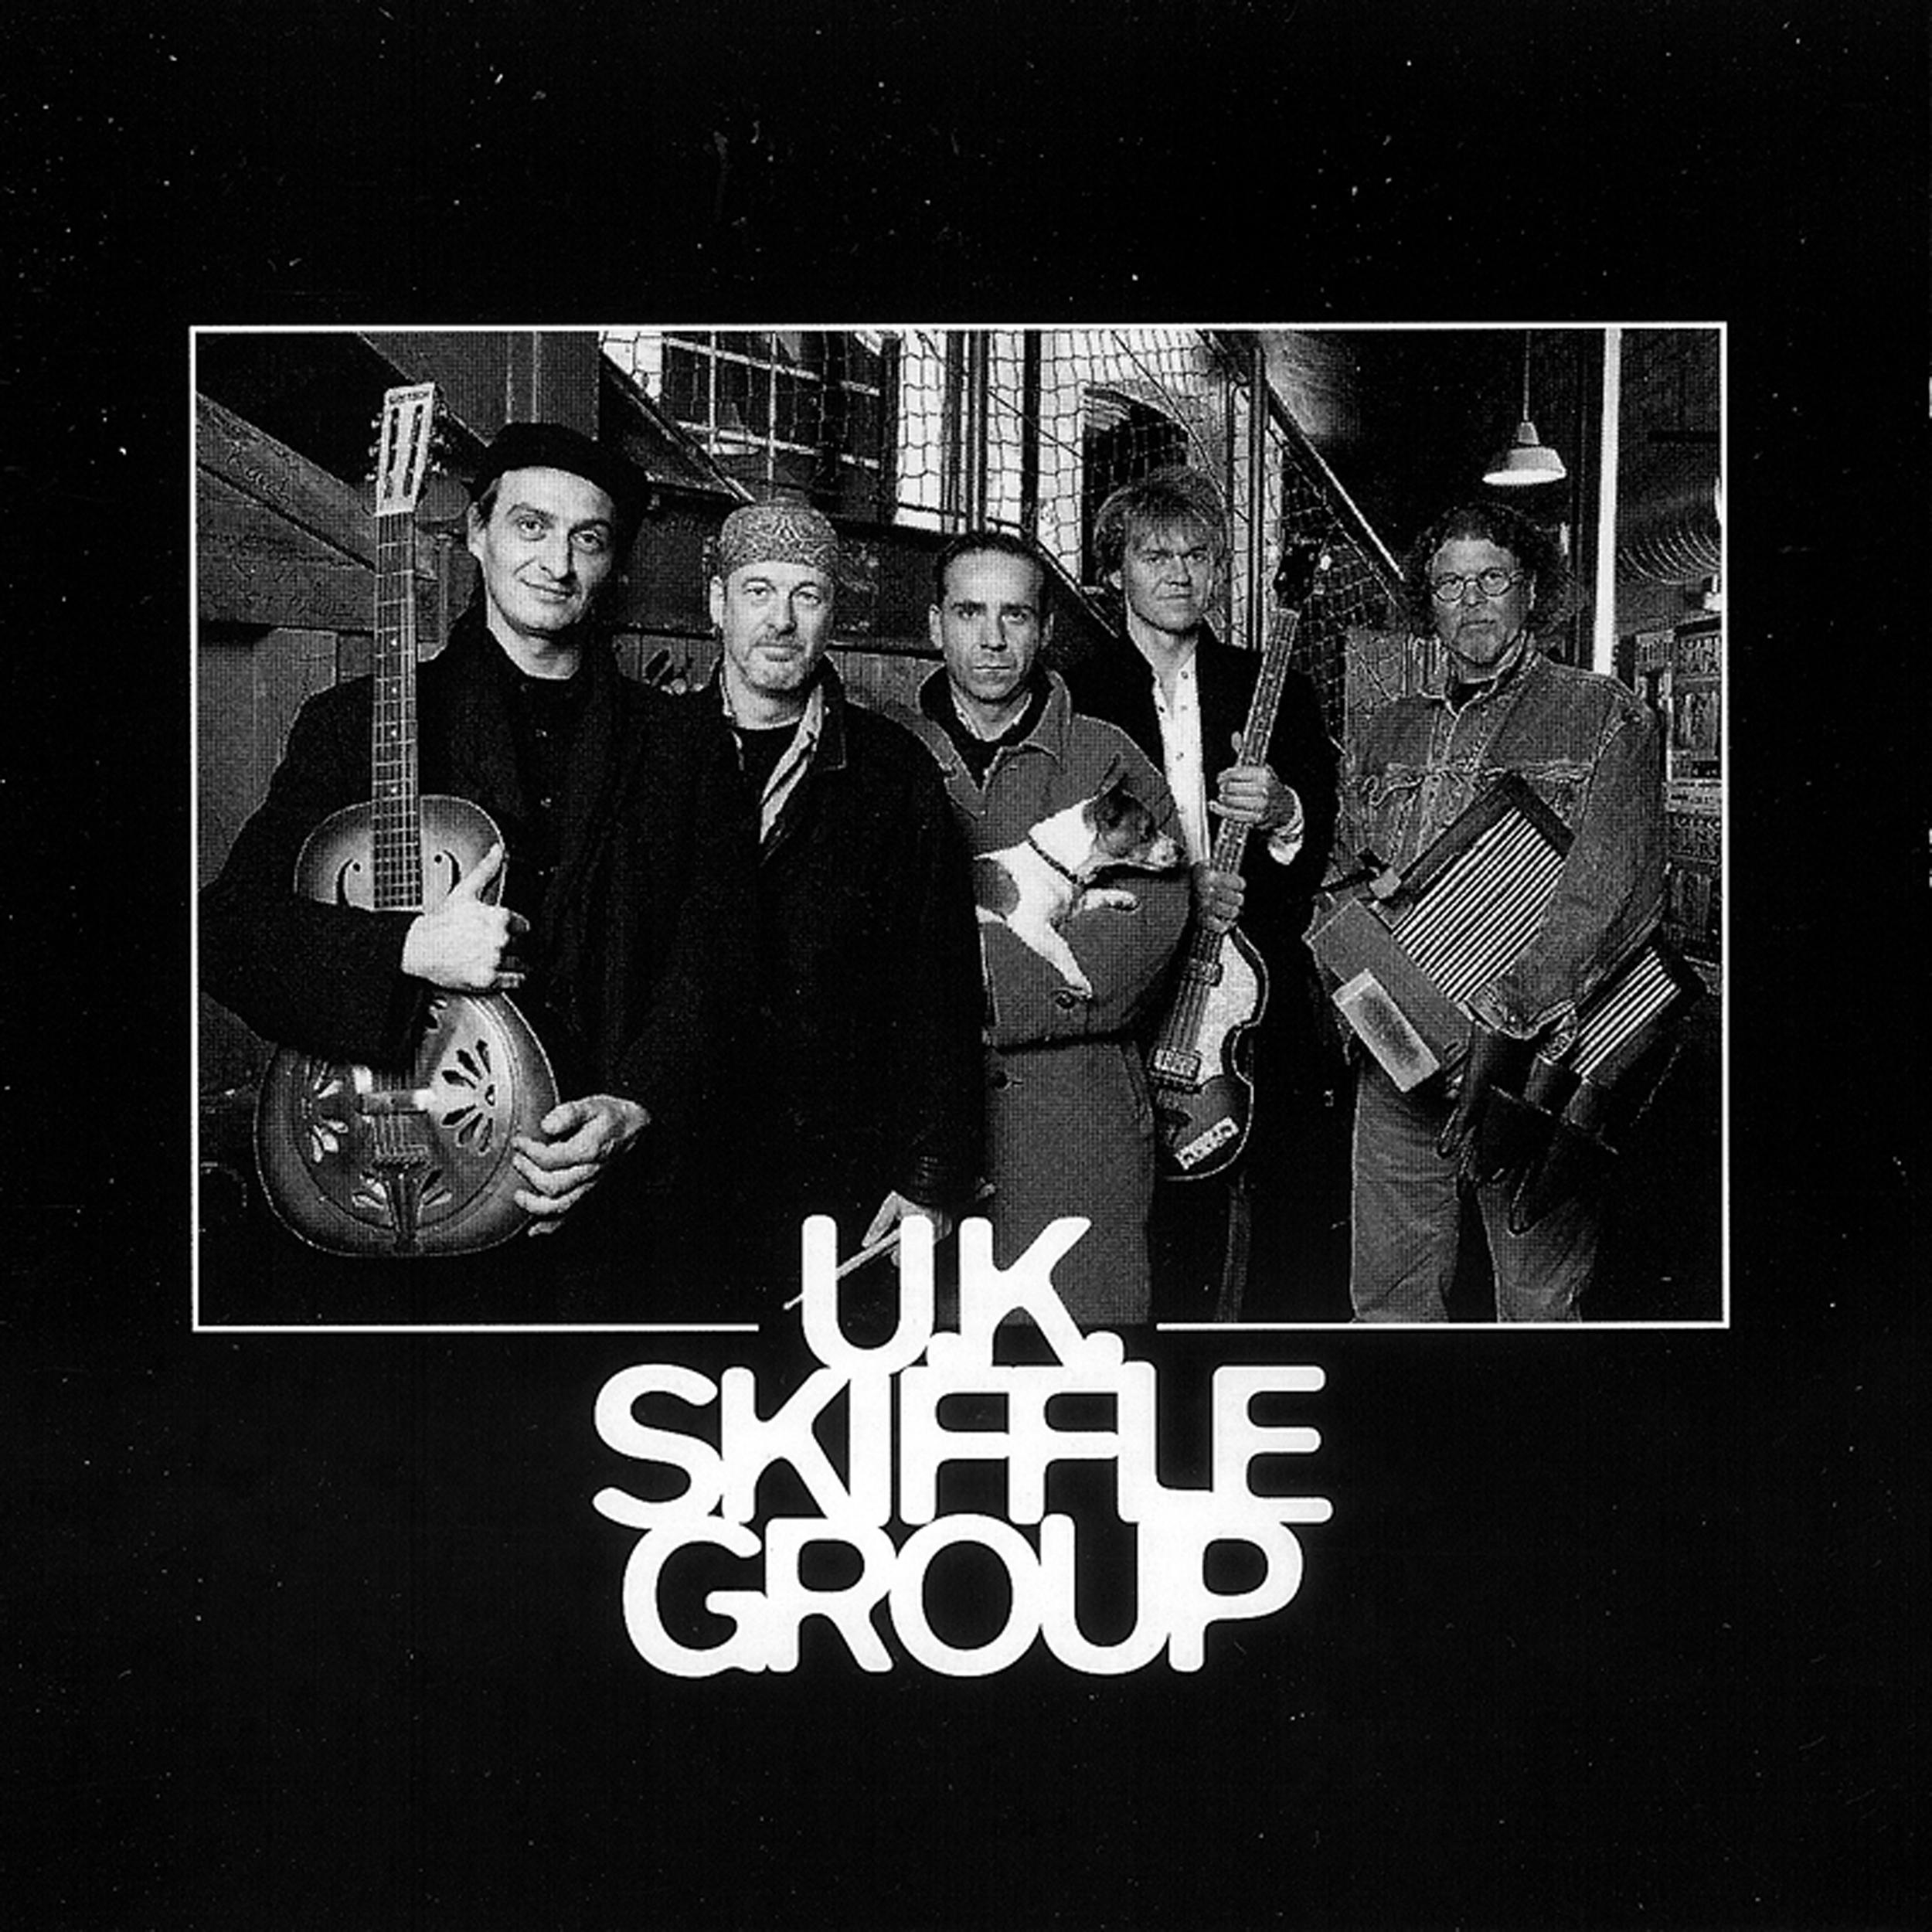 U.K. Skiffle Group